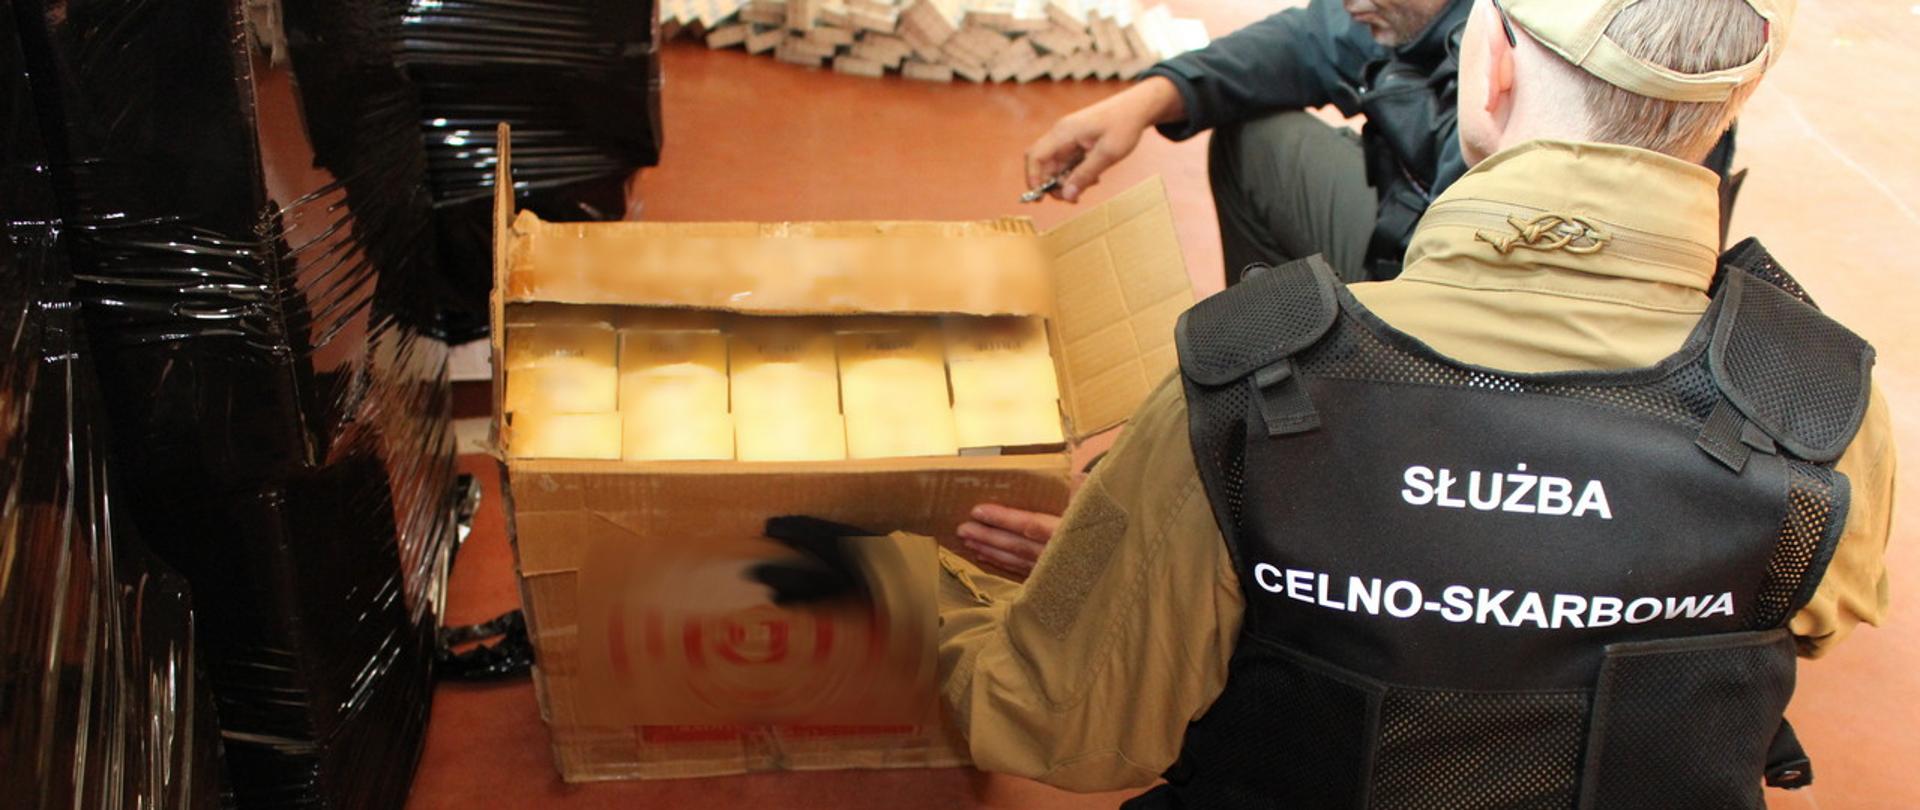 Funkcjonariusze Służby Celno-Skarbowej przed kartonem, w którym znajdują się nielegalne papierosy